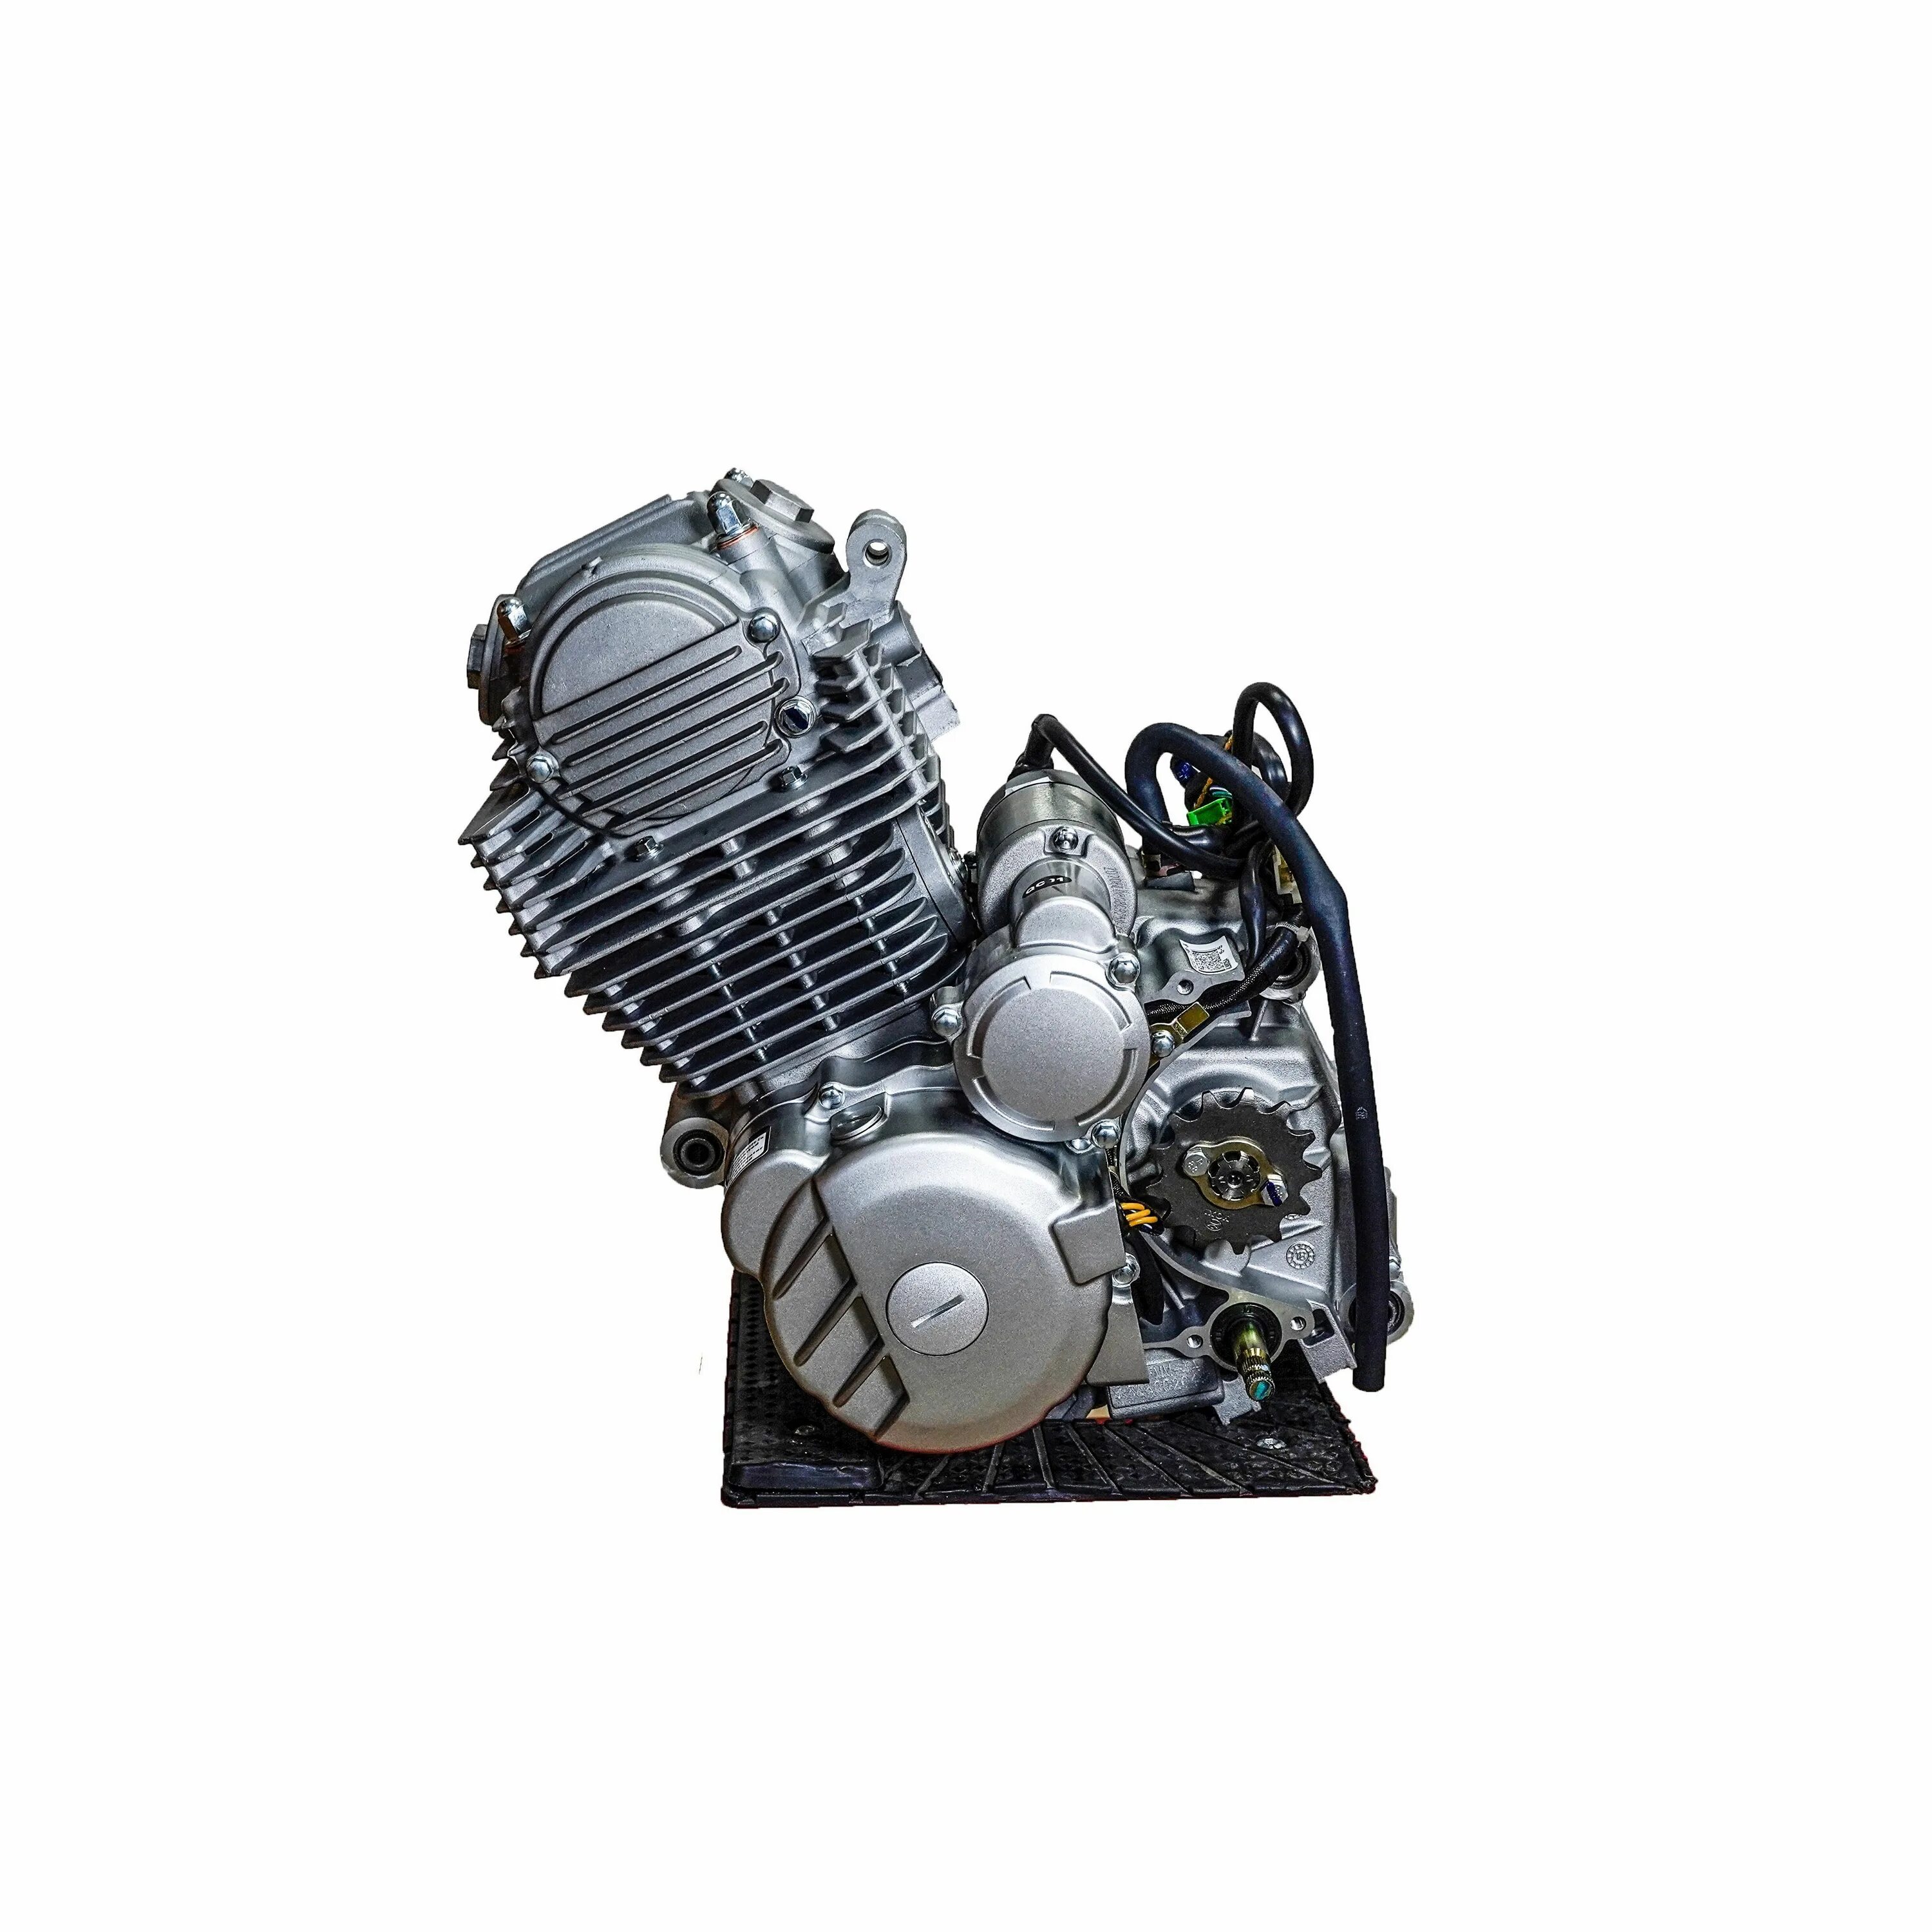 Zs172fmm. Zs172fmm-5a двигатель. Мотор Зонгшен 172 FMM. Zs172fmm с балансирным валом. Купить 172 мотор